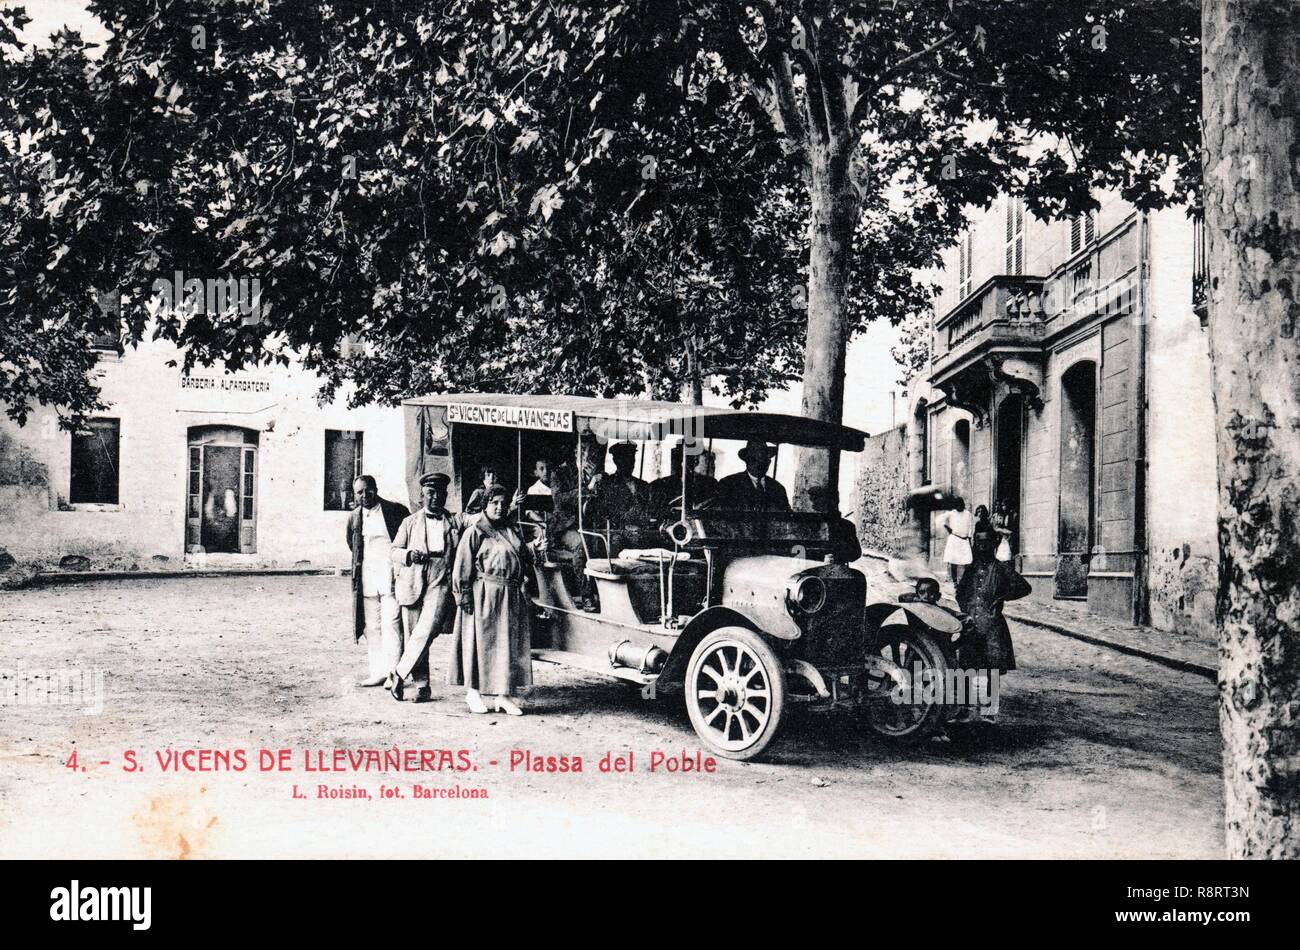 Tarjeta postale. Automóvil para el transporte de viajeros estacionado en la plaza del Poble en Sant Vicens de Llavaneres. Años 1920. Foto Stock